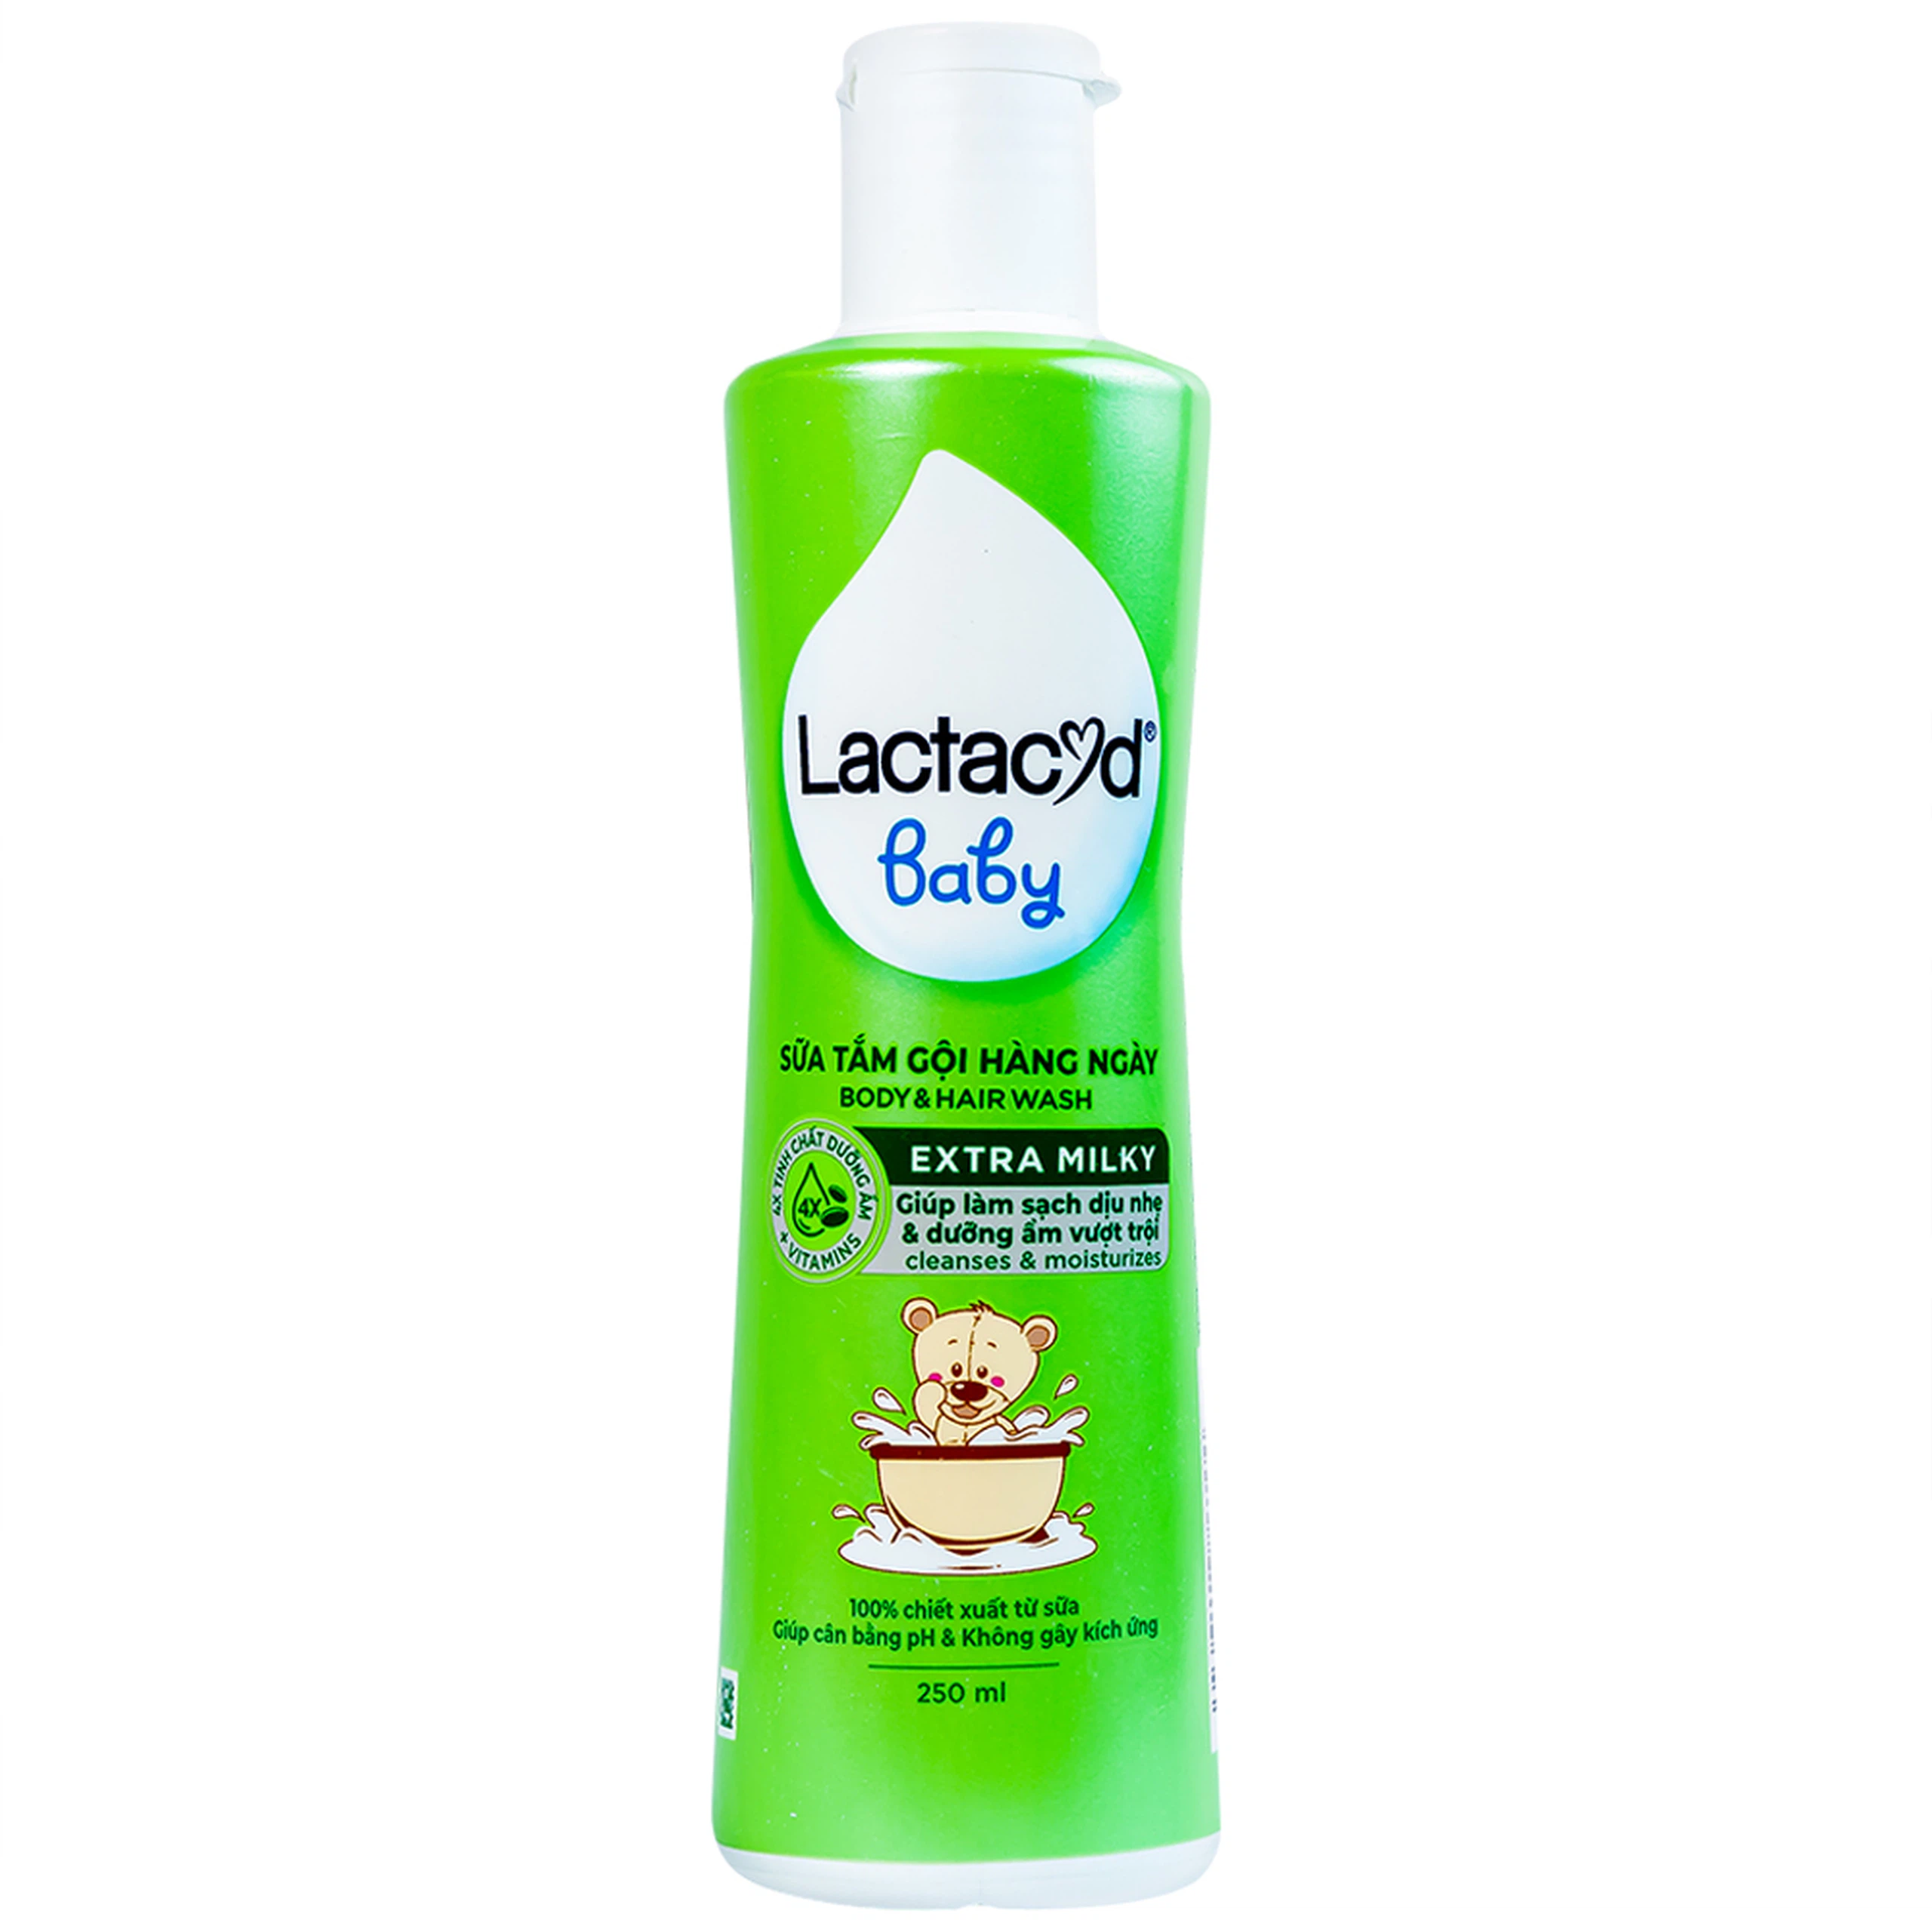 Sữa tắm gội hàng ngày Body And Hair Wash Lactacyd Baby Extra Milky sạch dịu nhẹ, dưỡng ẩm vượt trội (250ml)